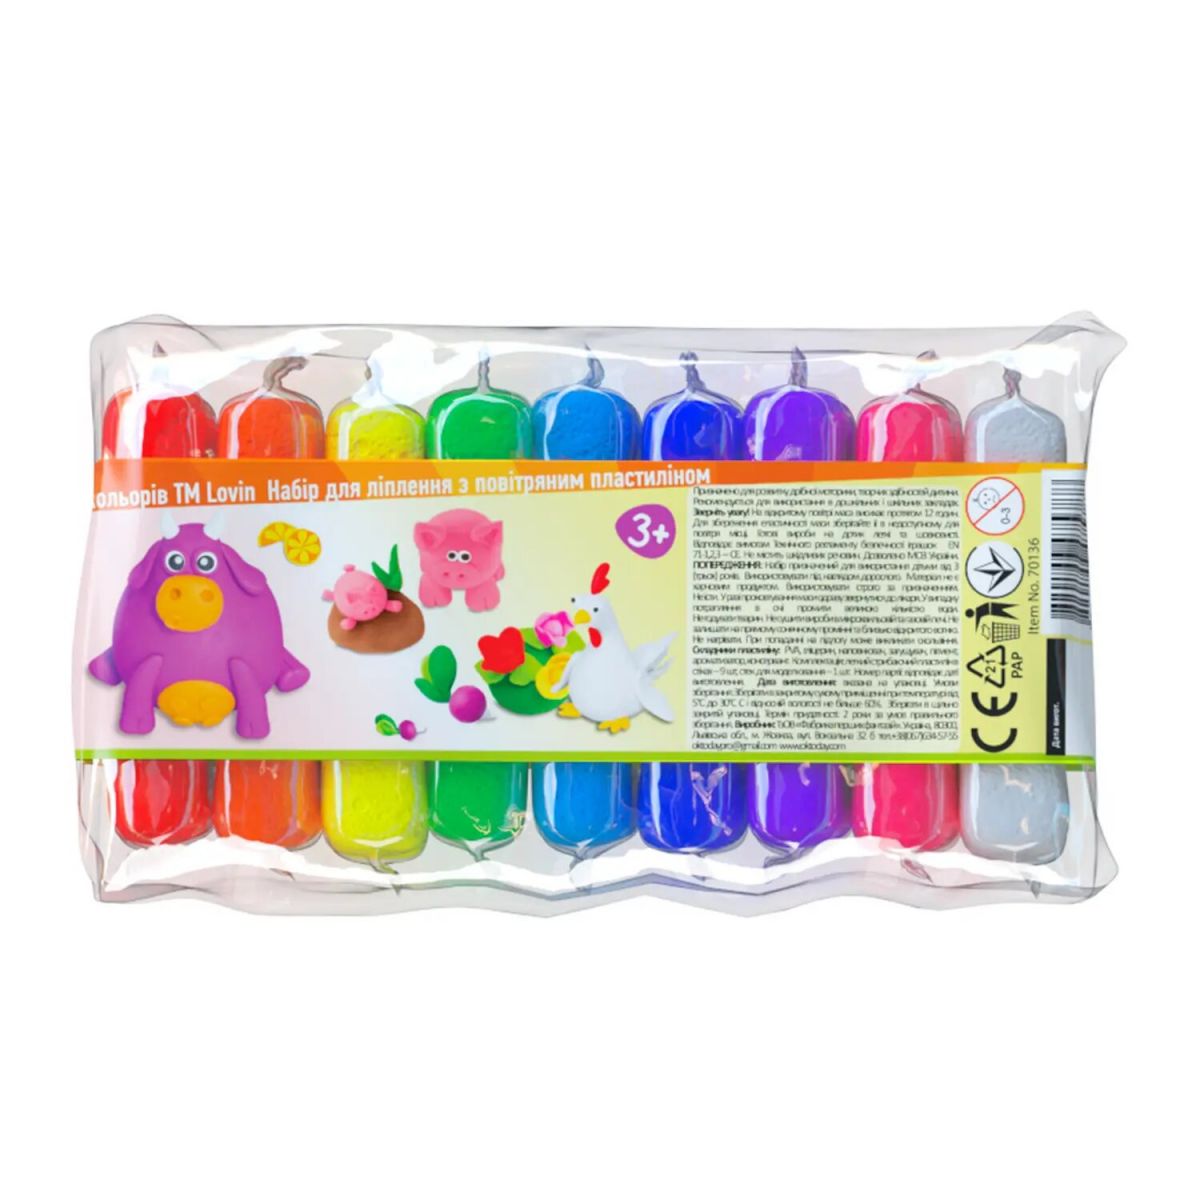 Набір для ліплення з повітряним пластиліном, 9 кольорів